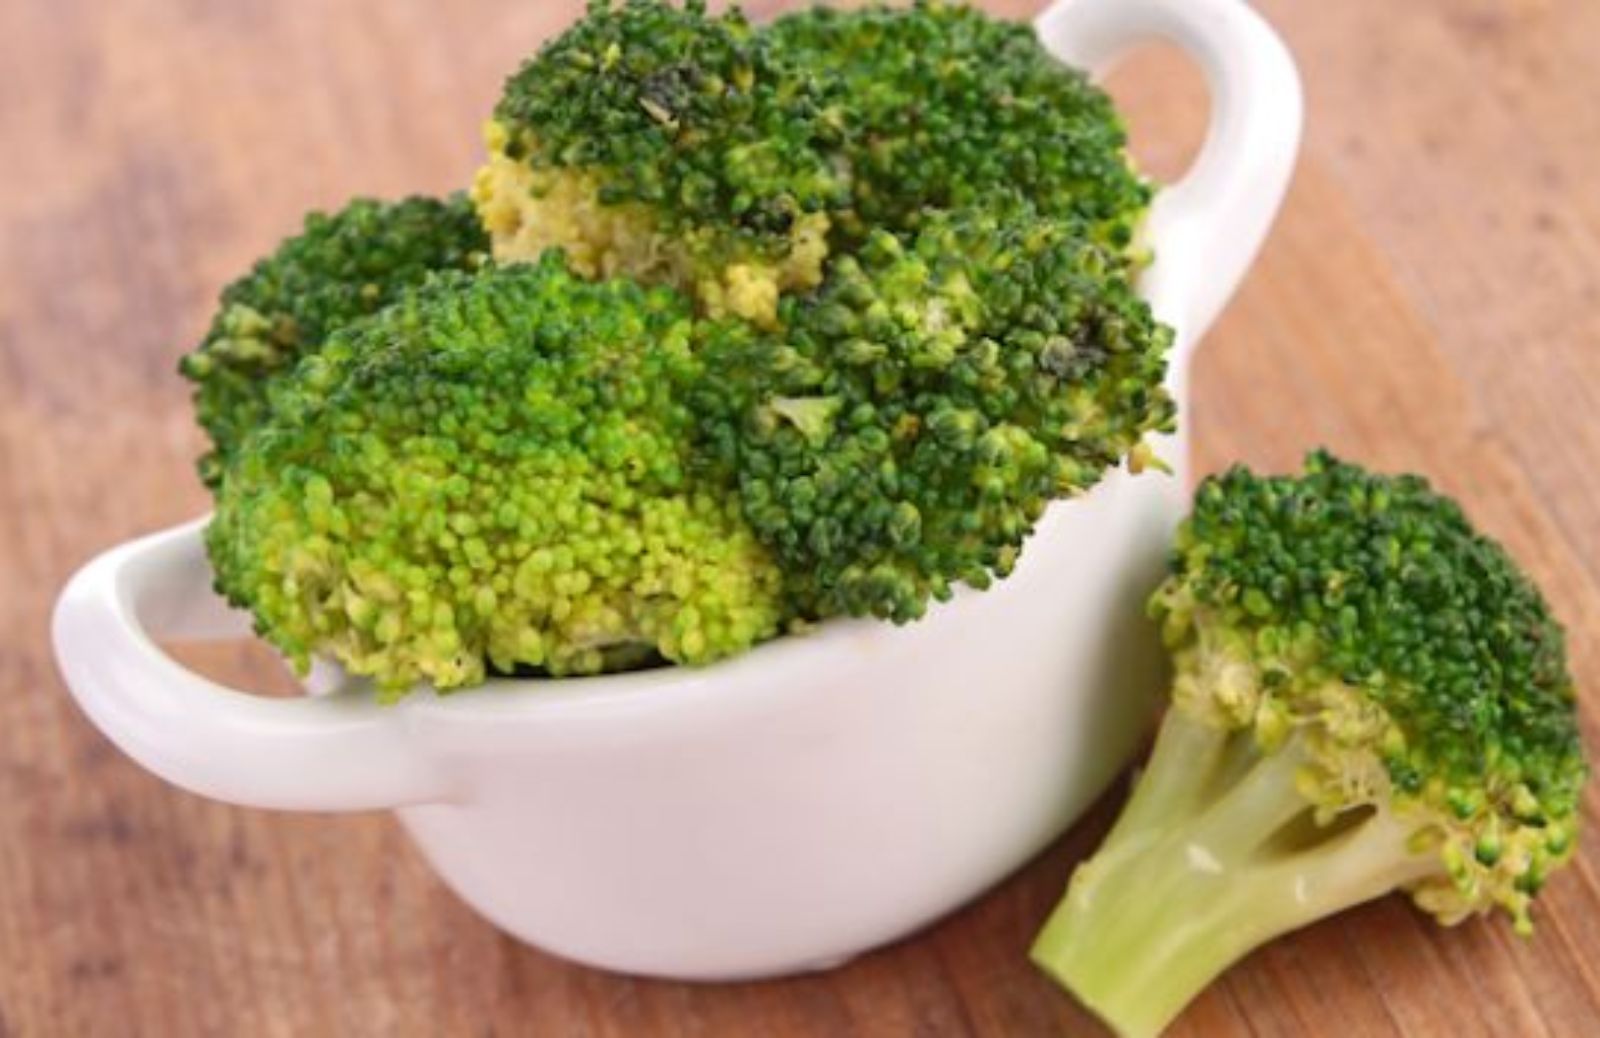 Come fare gli sformatini di broccoli